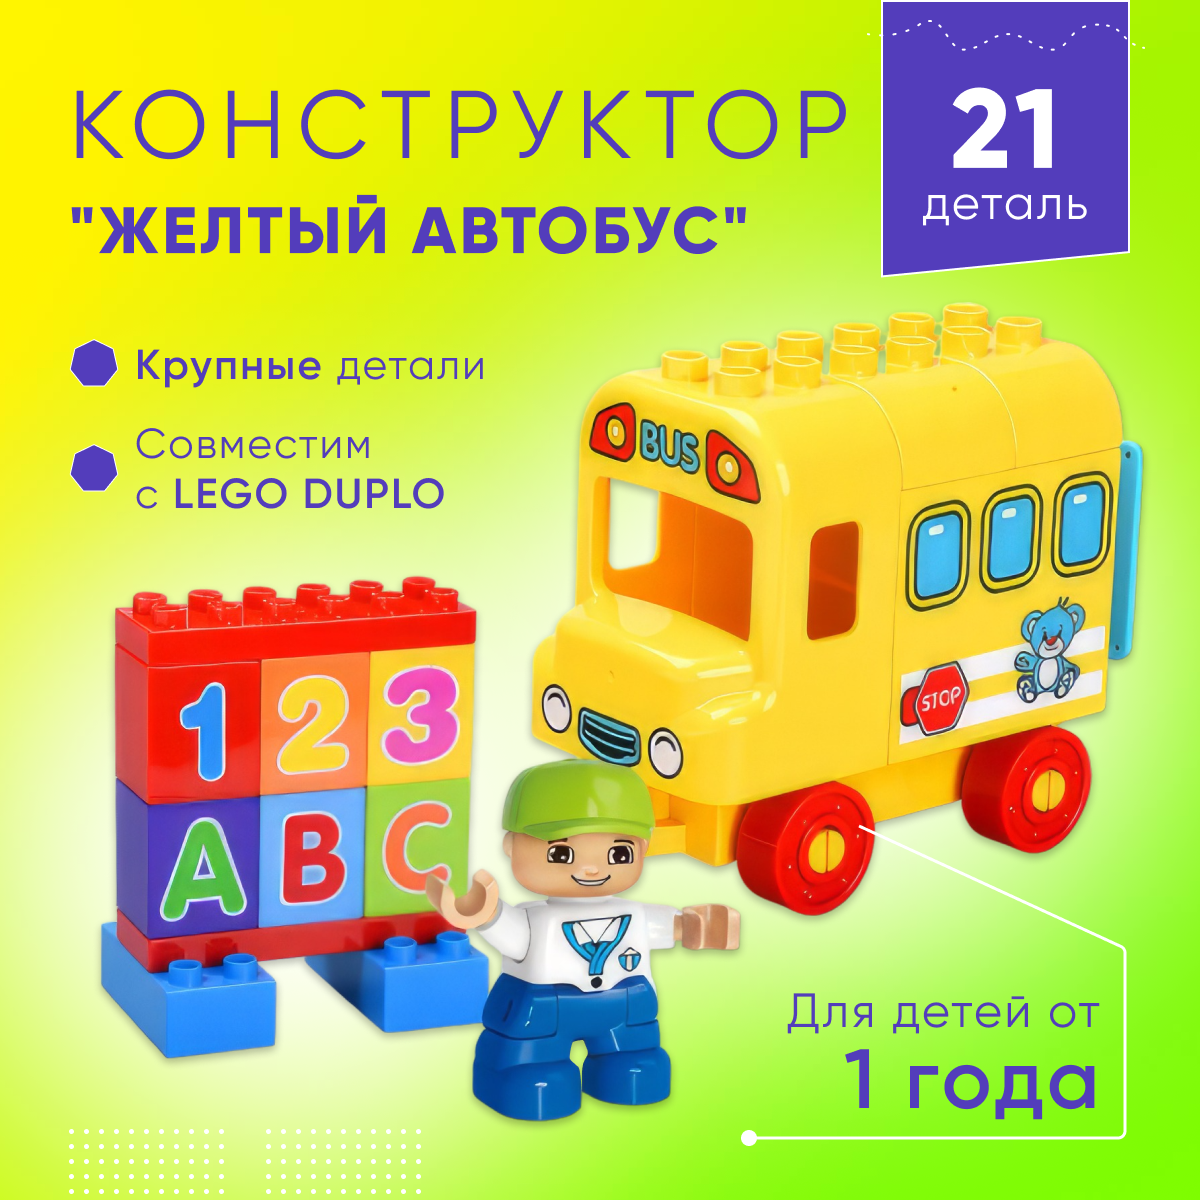 Набор игровой Sitstep конструктор Автобус, 21 деталь